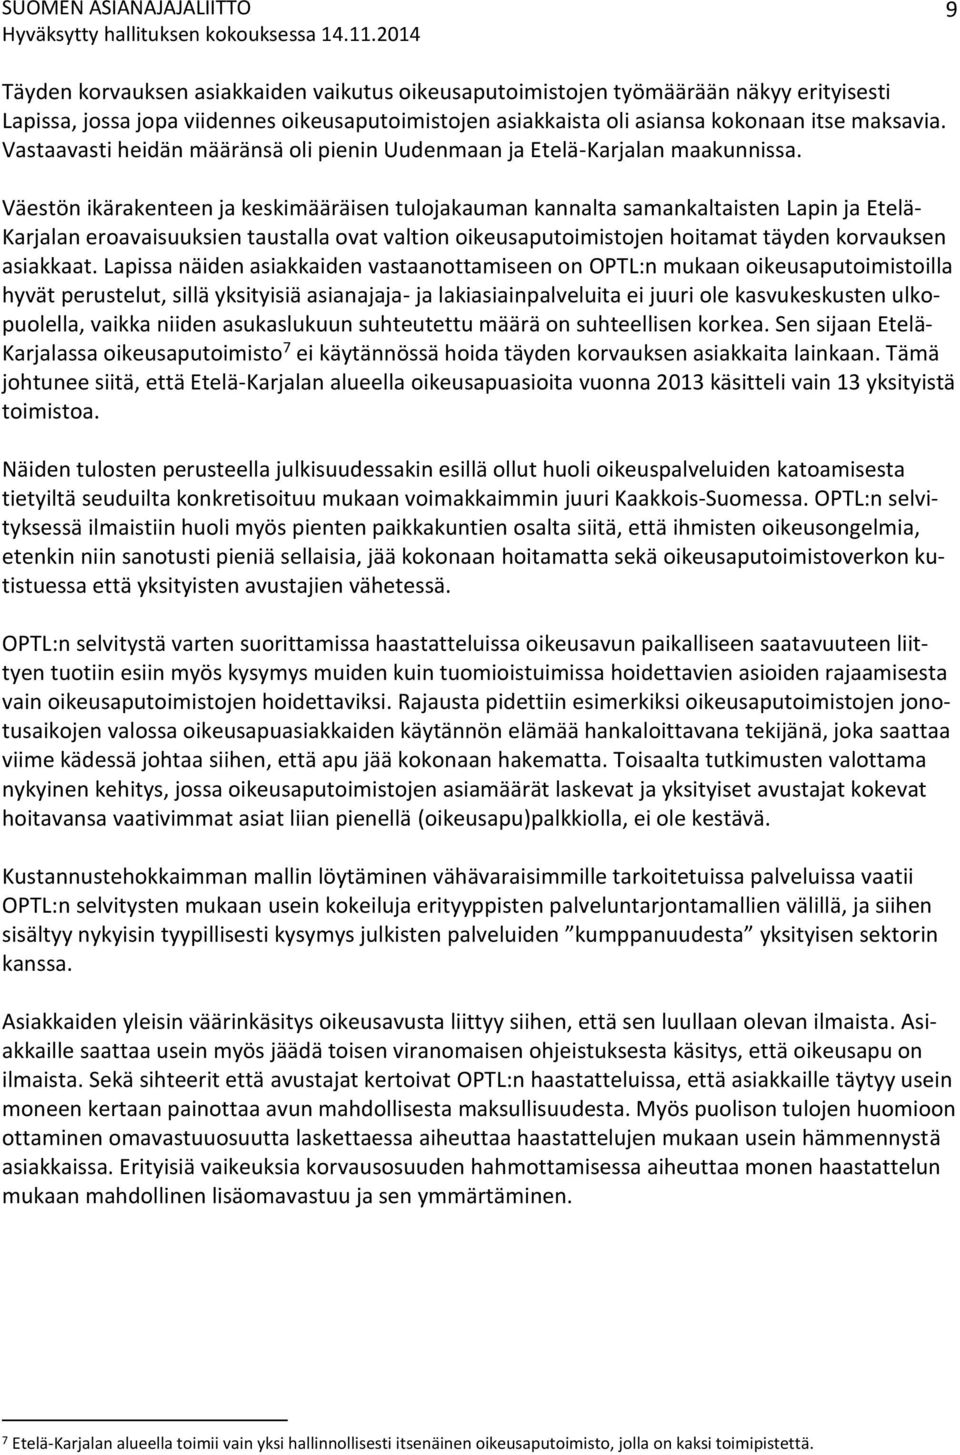 Väestön ikärakenteen ja keskimääräisen tulojakauman kannalta samankaltaisten Lapin ja Etelä- Karjalan eroavaisuuksien taustalla ovat valtion oikeusaputoimistojen hoitamat täyden korvauksen asiakkaat.